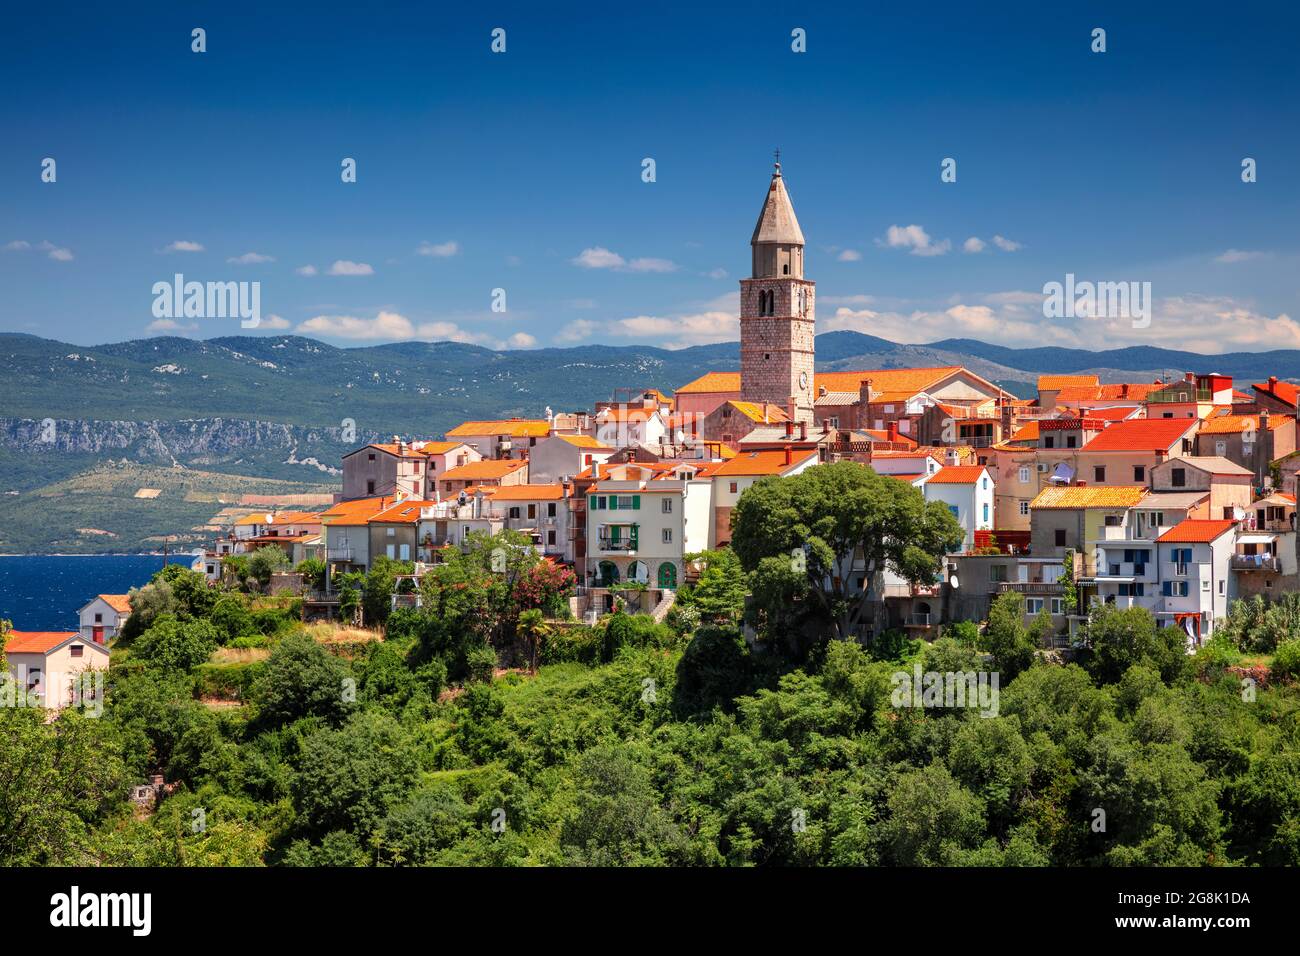 Vrbnik, Croacia. Imagen del paisaje urbano aéreo del emblemático pueblo de Vrbnik, Croacia, situado en la isla de Krk en un hermoso día de verano. Foto de stock